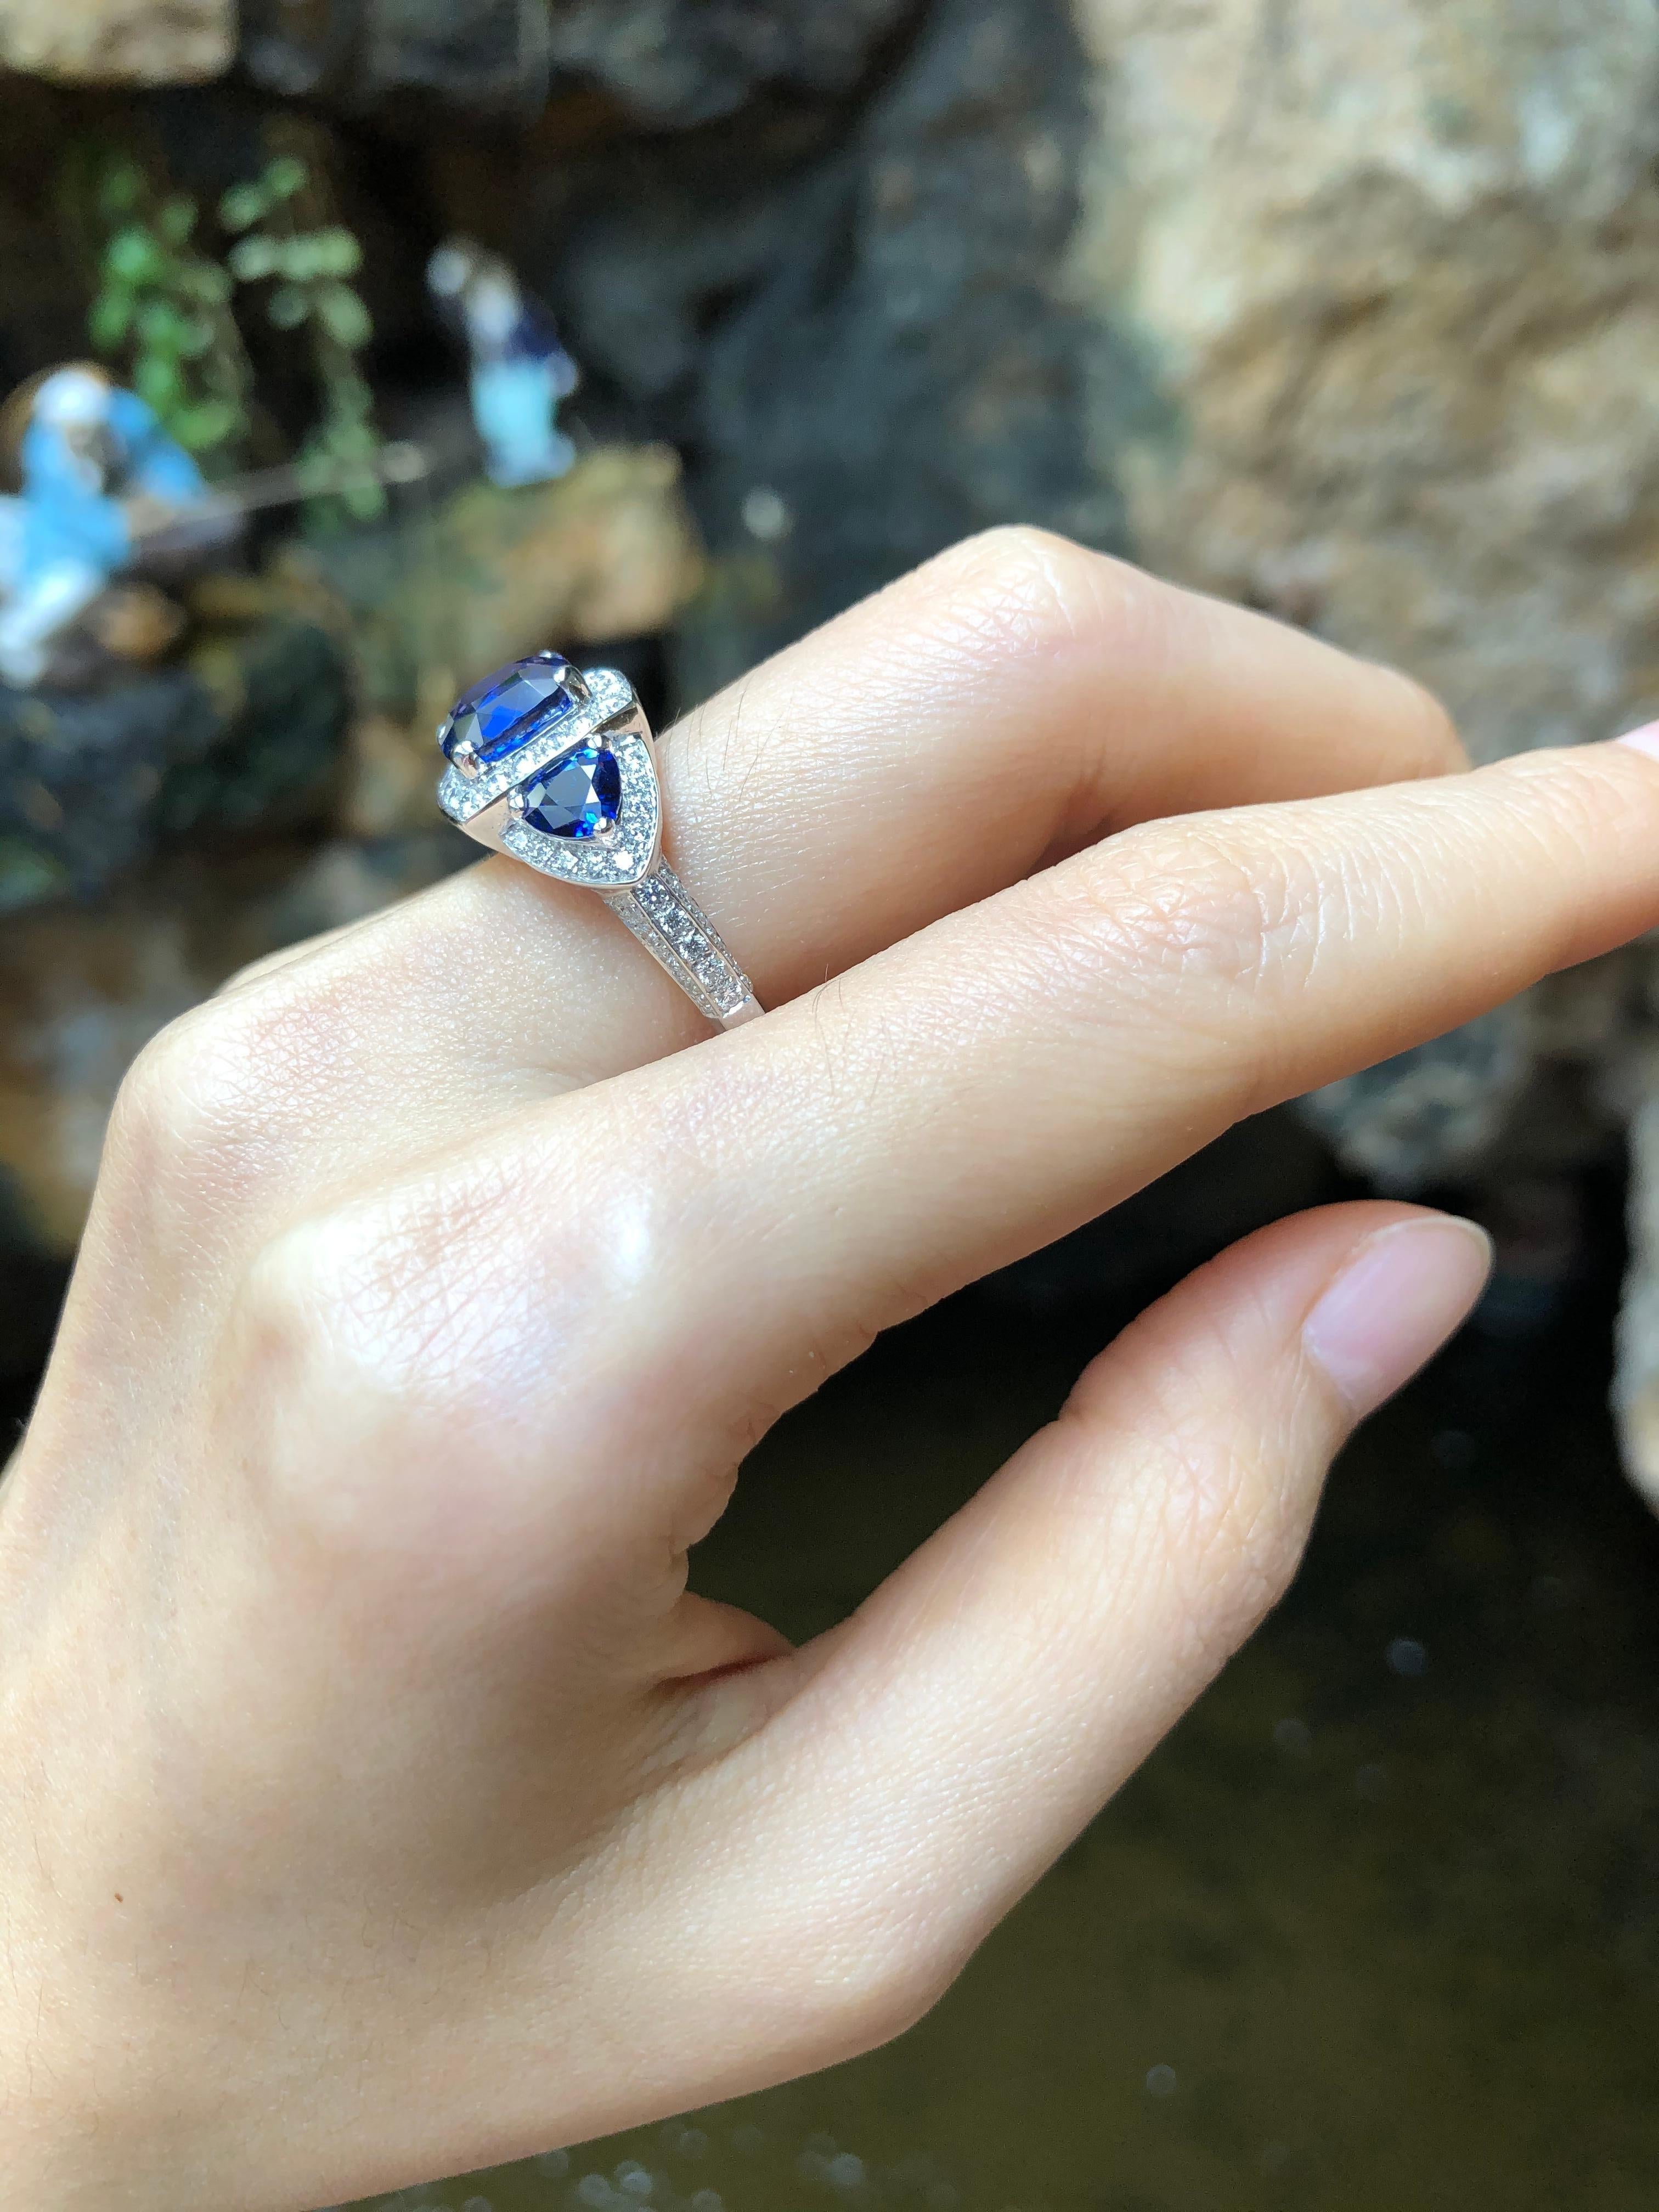 Blue Sapphire 3.64 carats with Blue Sapphire 1.40 carats and Diamond 0.96 carat Ring set in 18 Karat White Gold Settings

Width:  0.8 cm 
Length: 0.8 cm
Ring Size: 54
Total Weight: 6.91 grams

